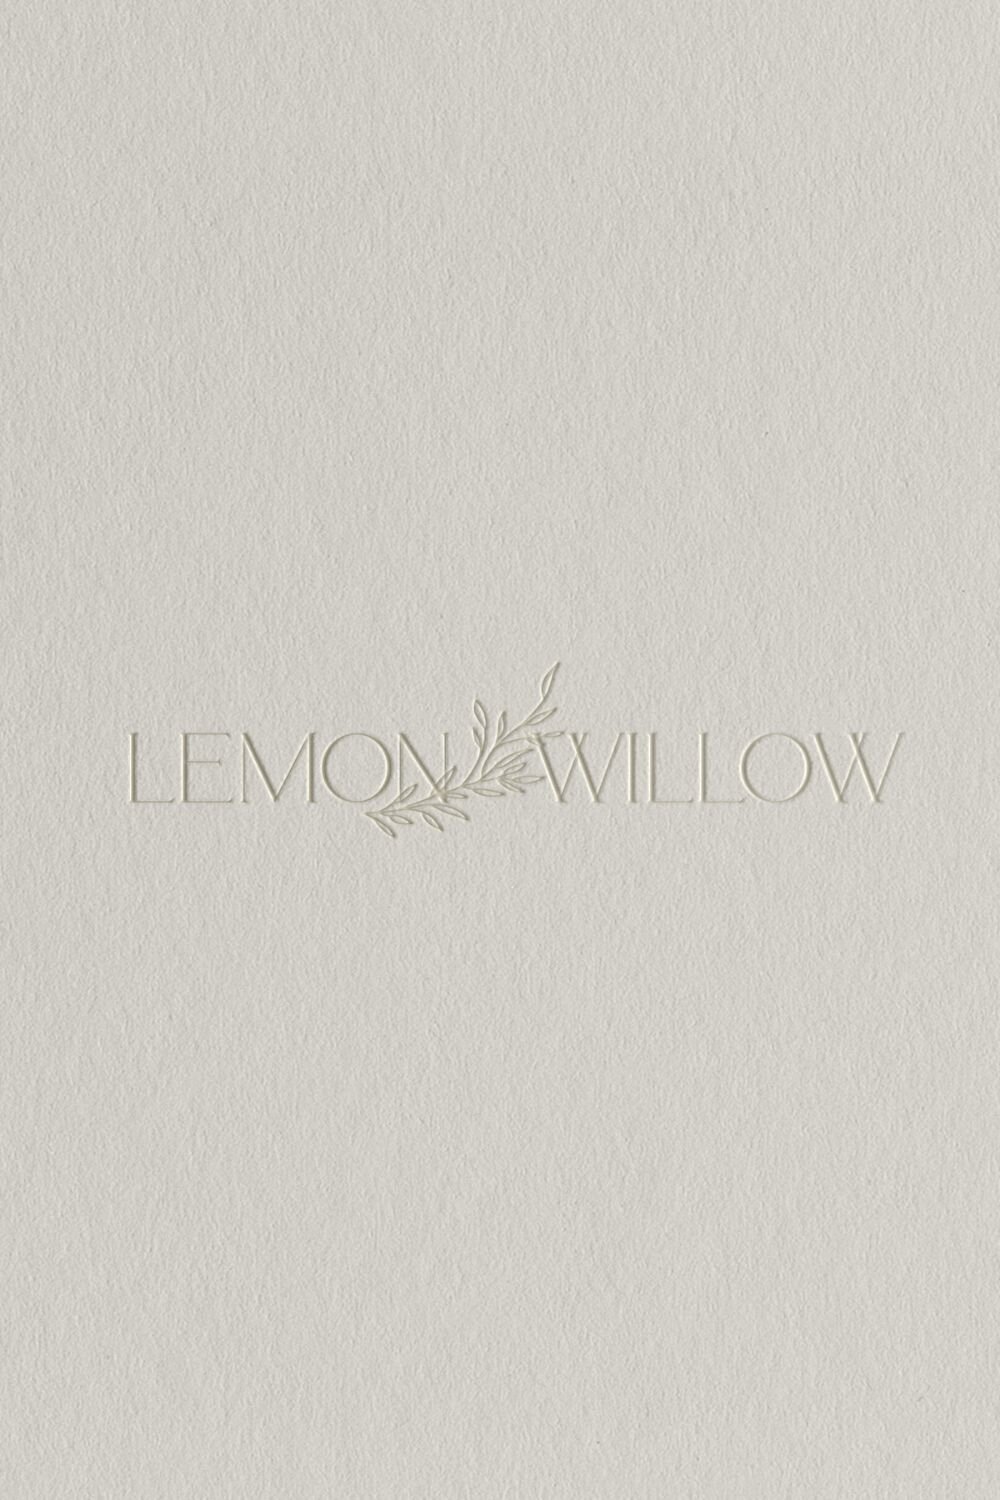 Lemon Willow Semi-Custom Brand Kit for photographers